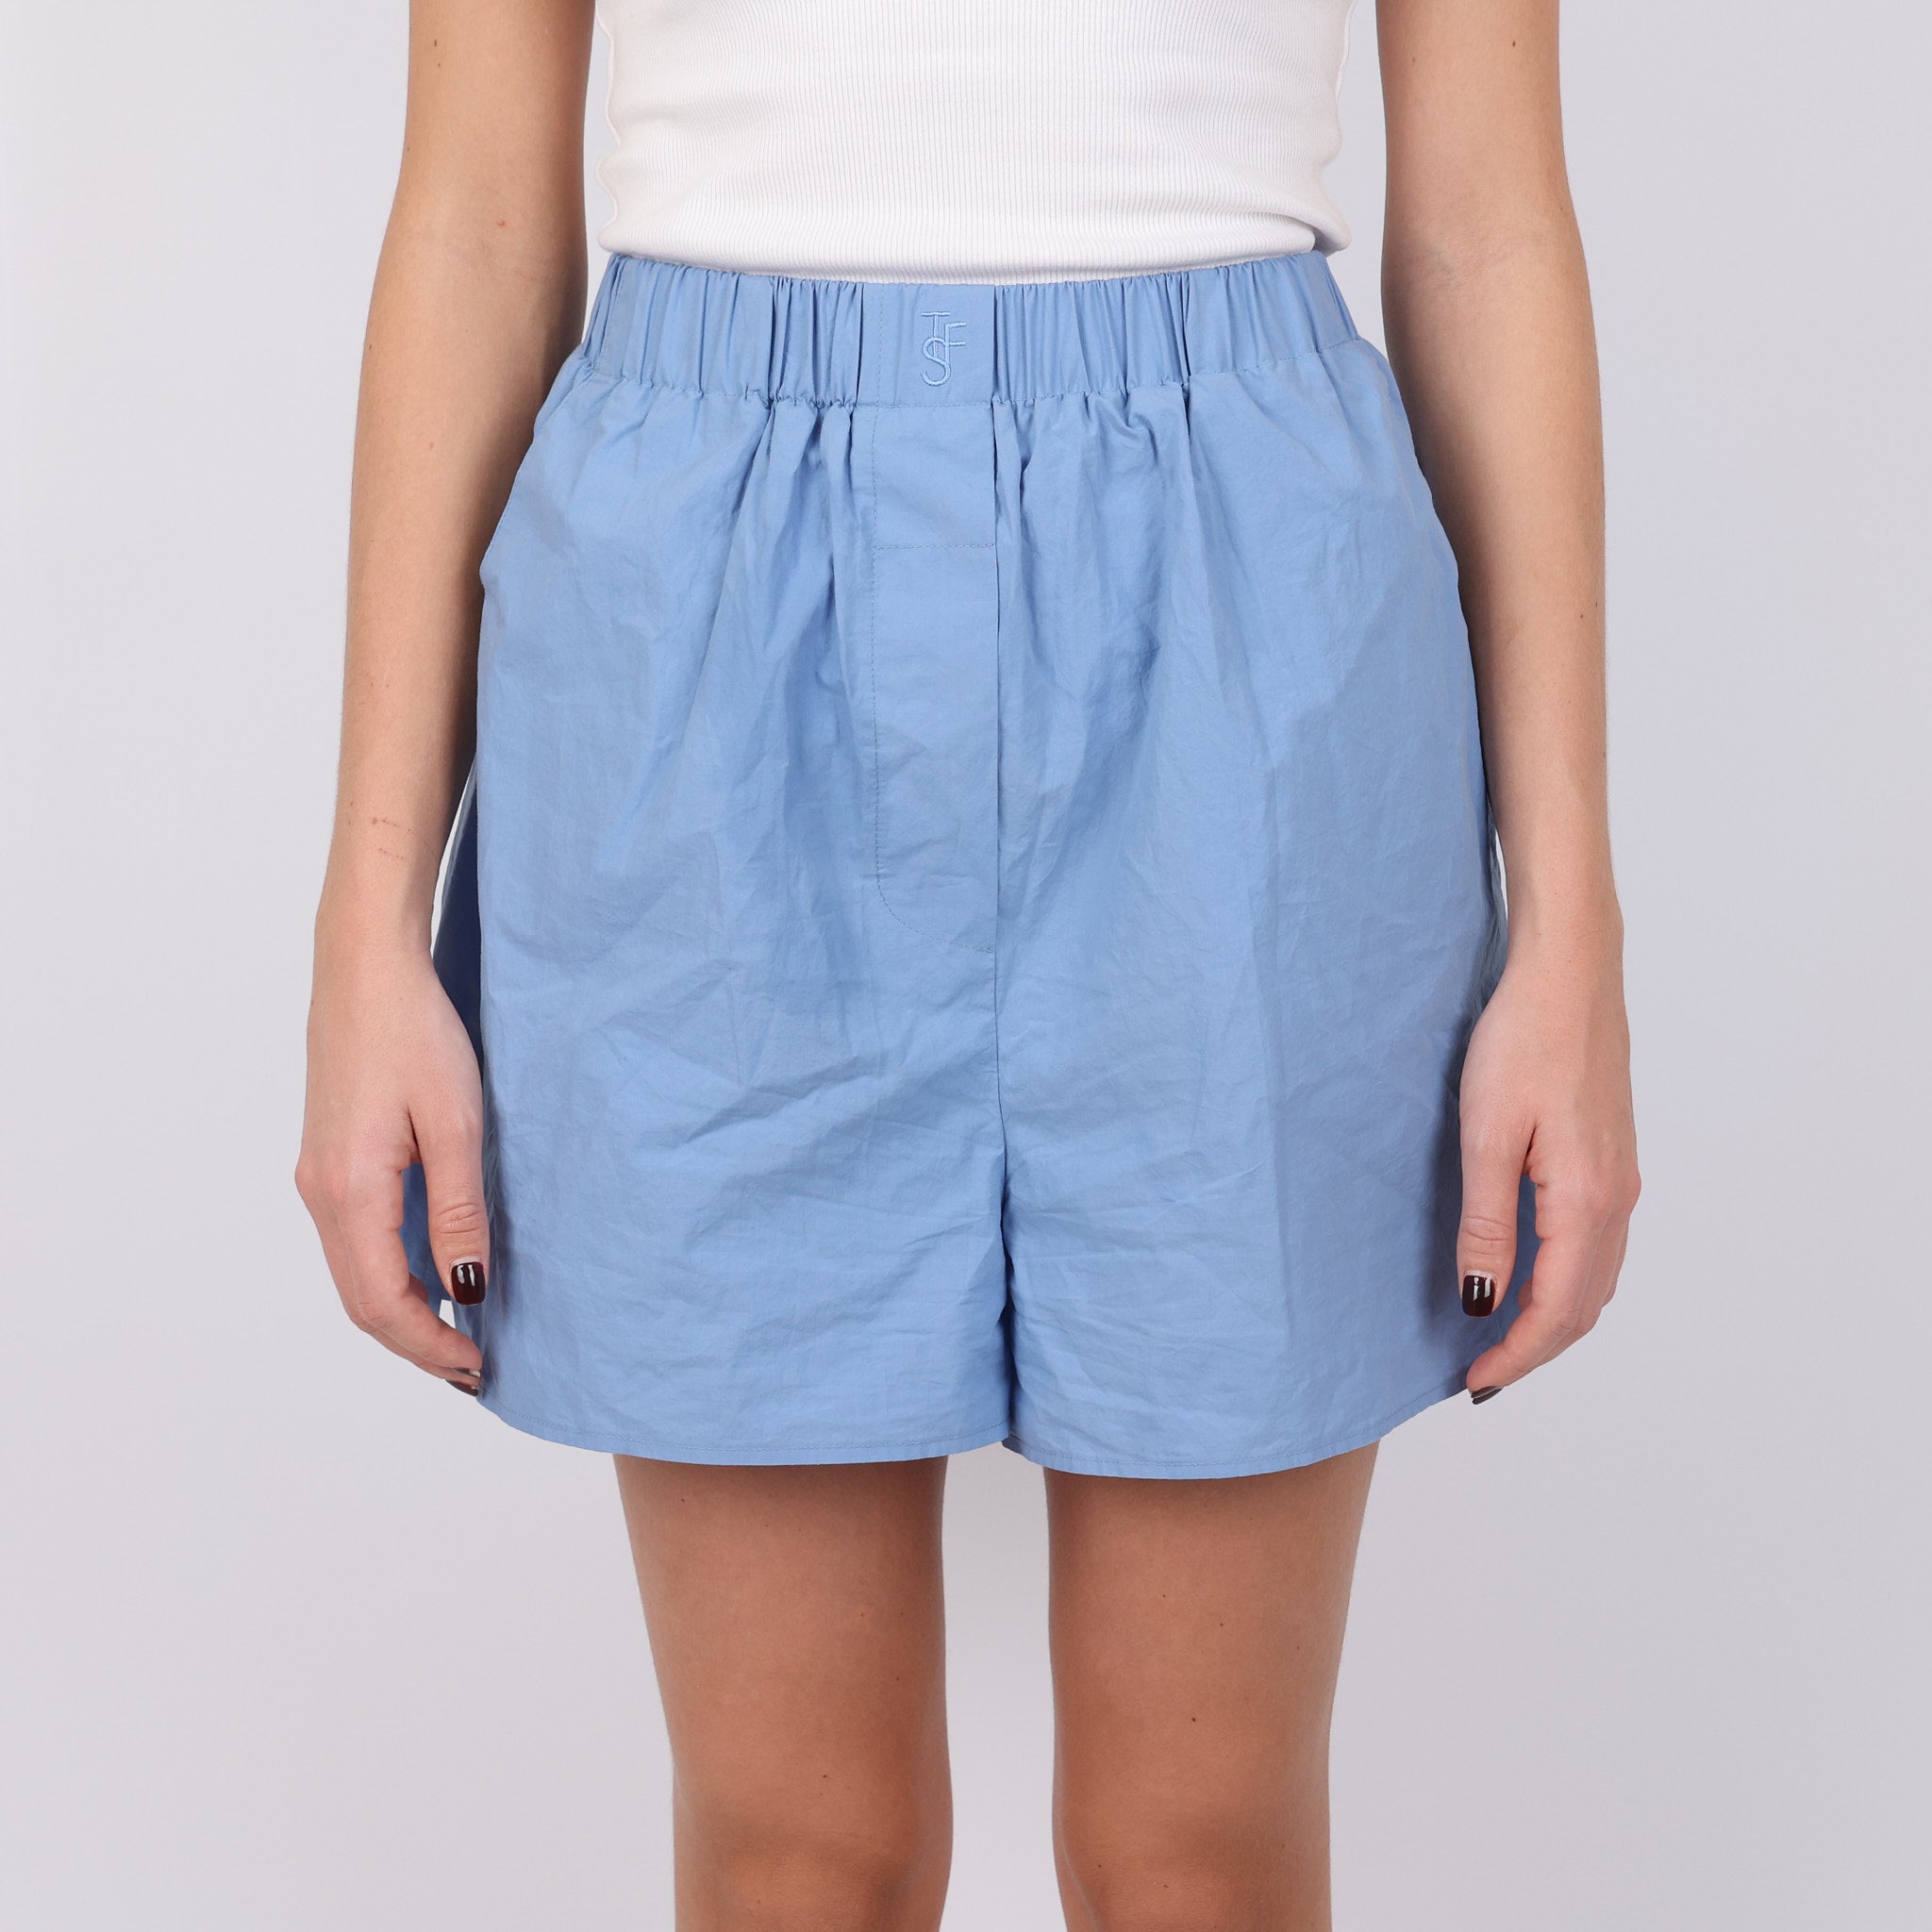 Shorts, UK Size 8